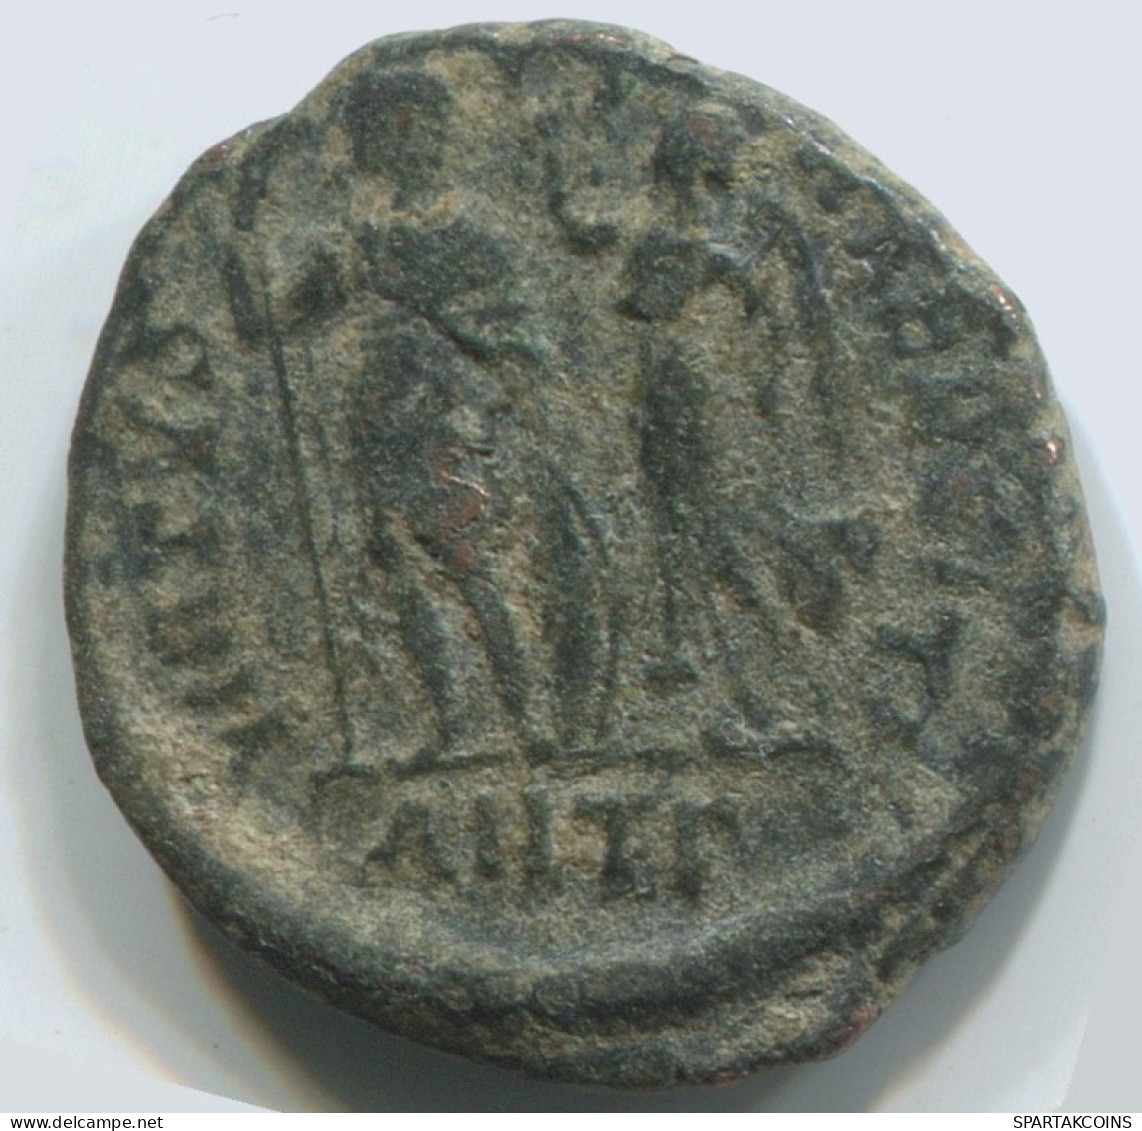 Authentische Antike Spätrömische Münze RÖMISCHE Münze 2.7g/18mm #ANT2358.14.D.A - The End Of Empire (363 AD To 476 AD)